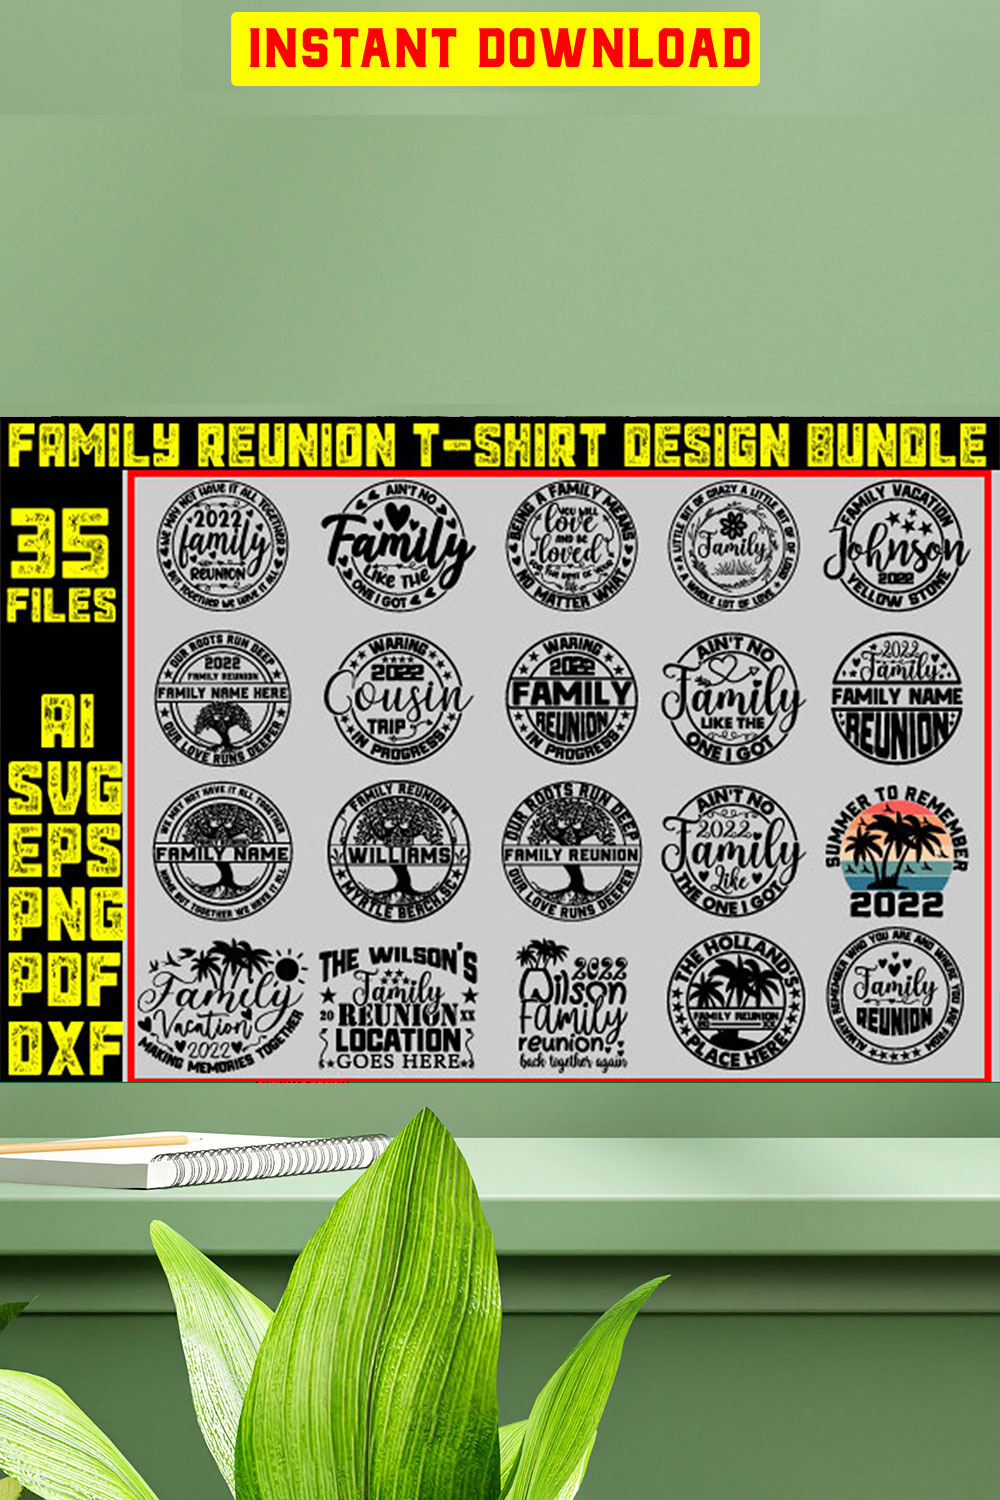 Family Reunion T-shirt Design Bundle pinterest preview image.